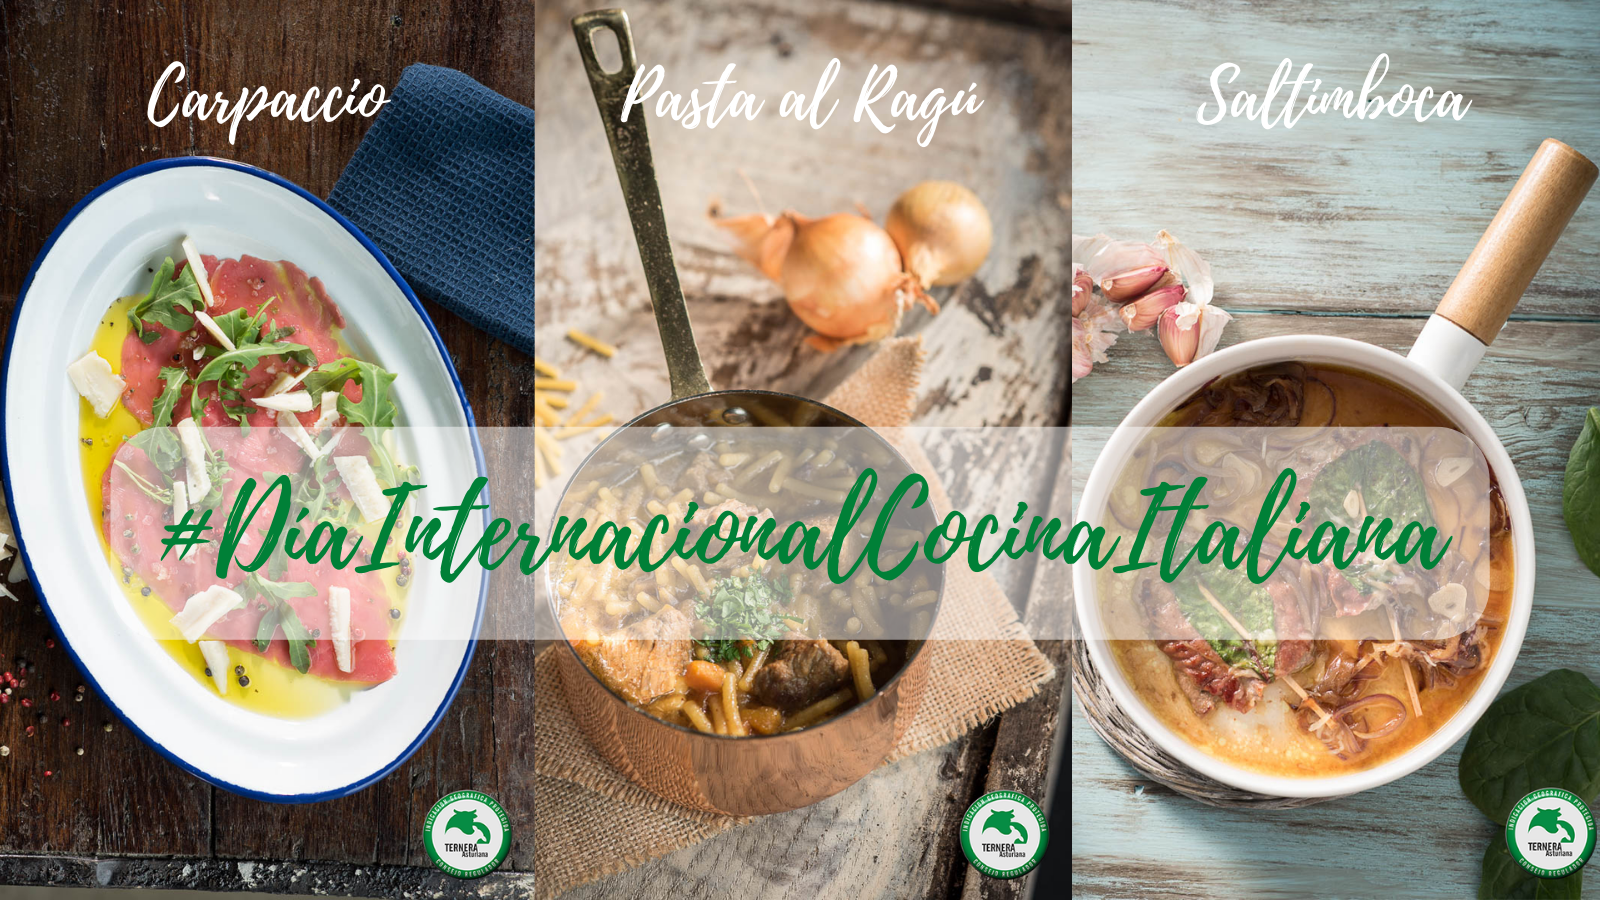 Día Internacional de la Cocina Italiana: NUESTRO HOMENAJE CON TERNERA ASTURIANA.